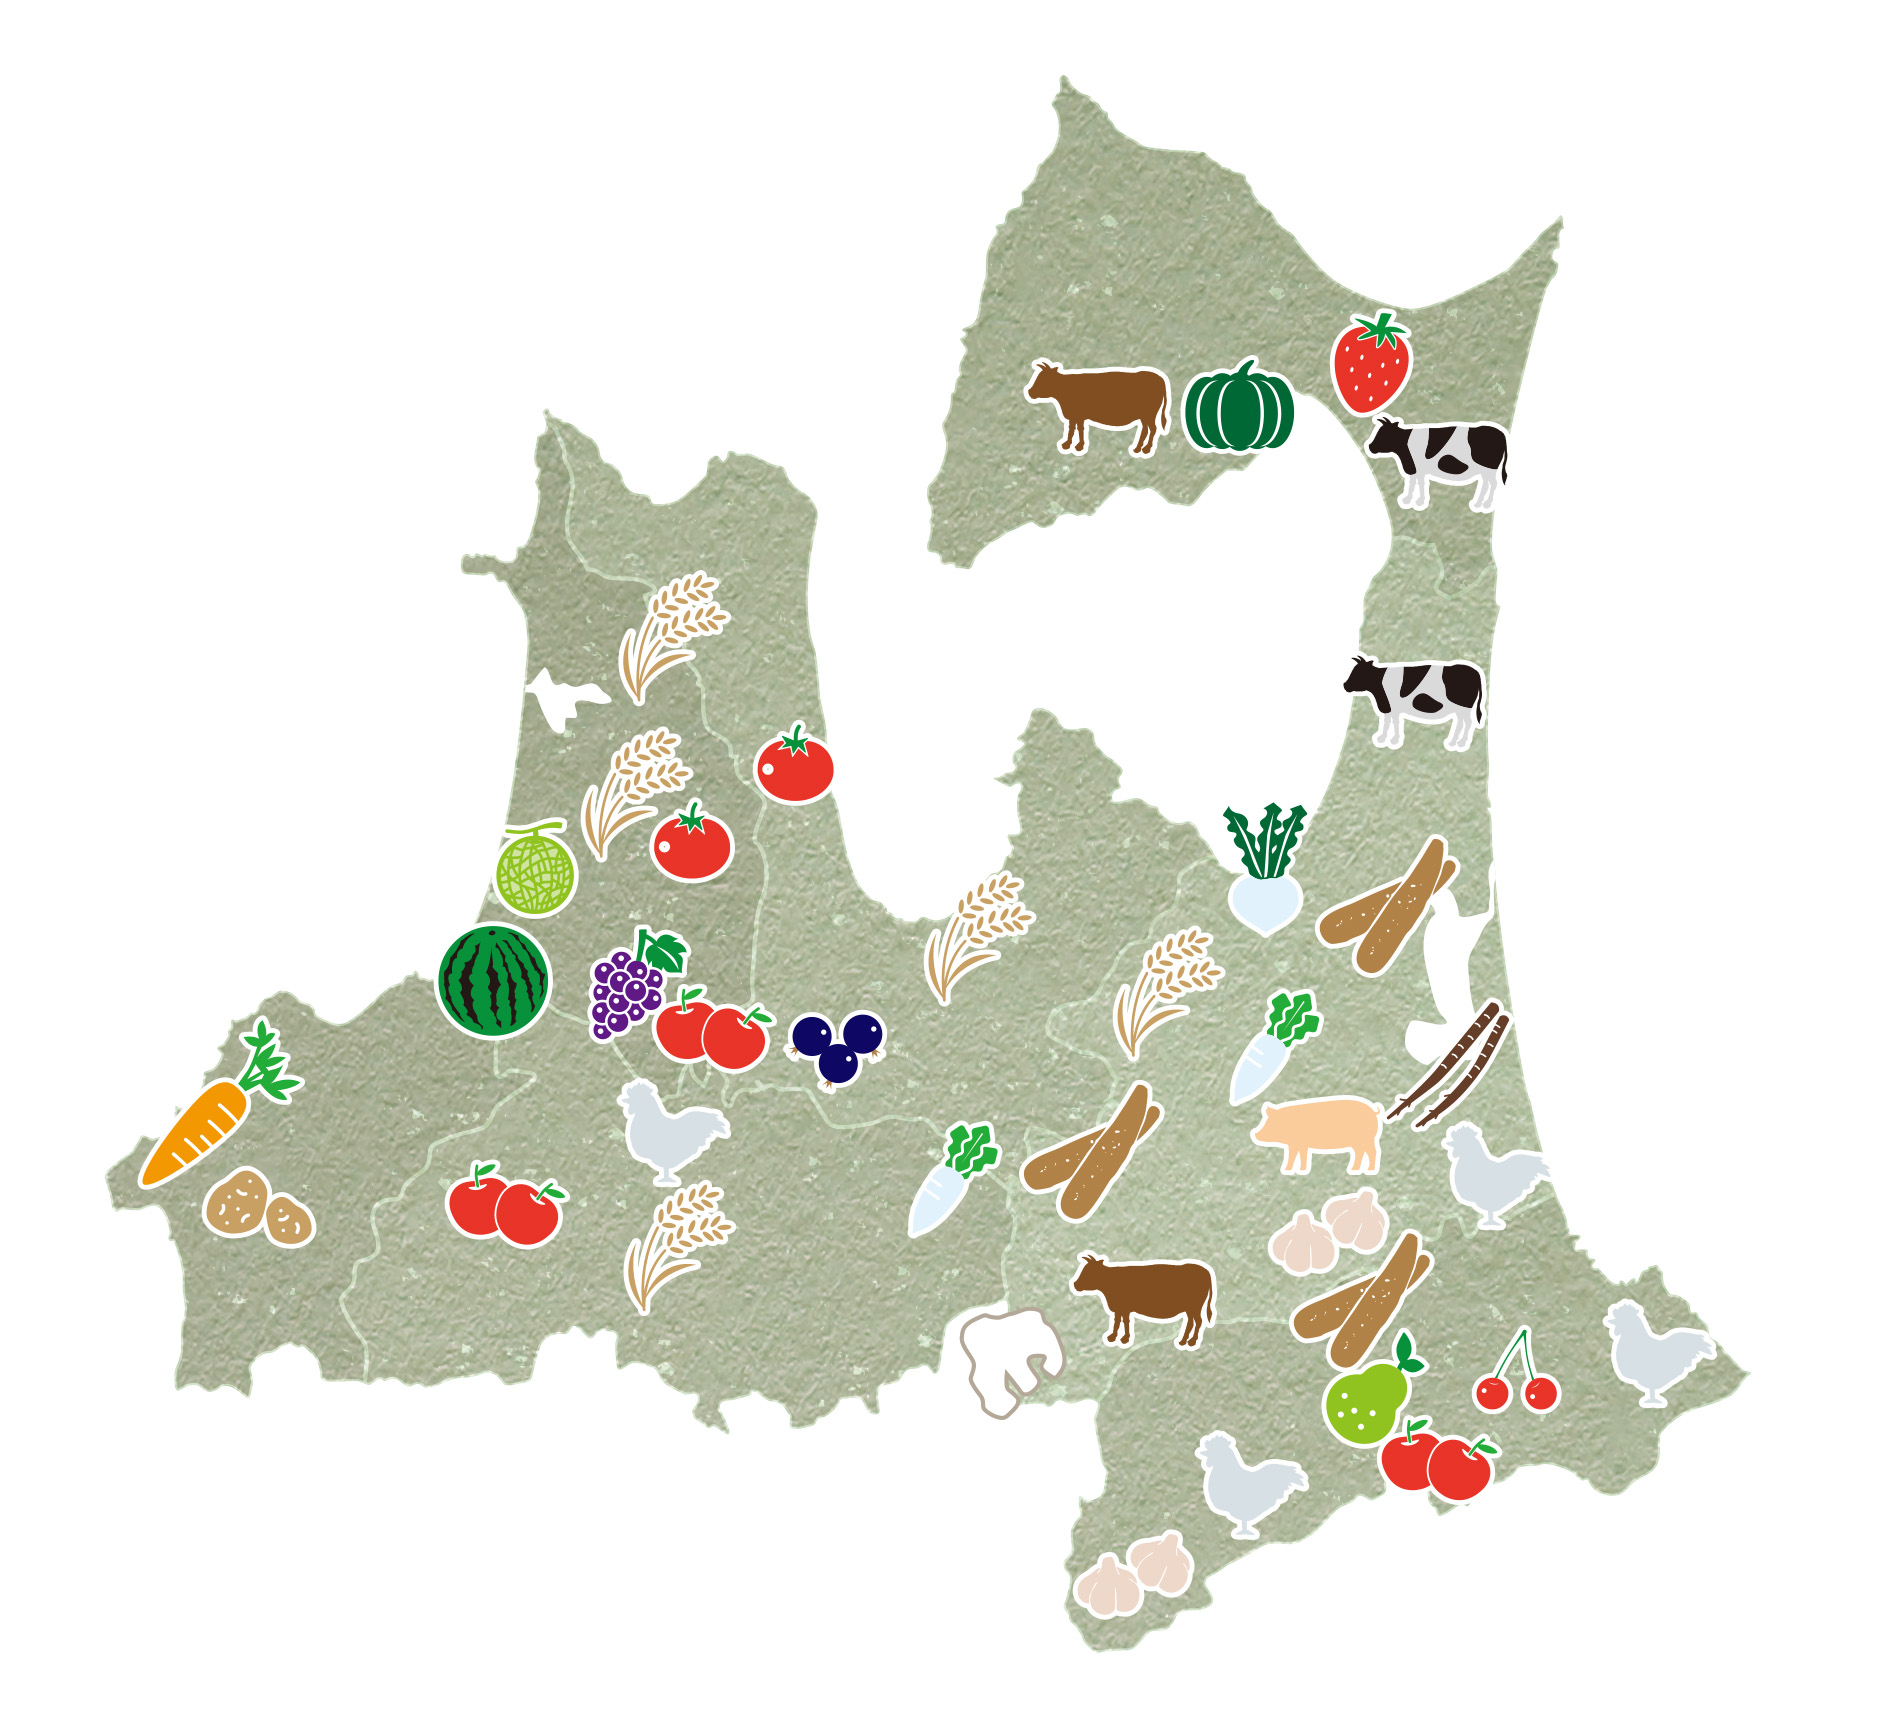 青森県 産品マップ